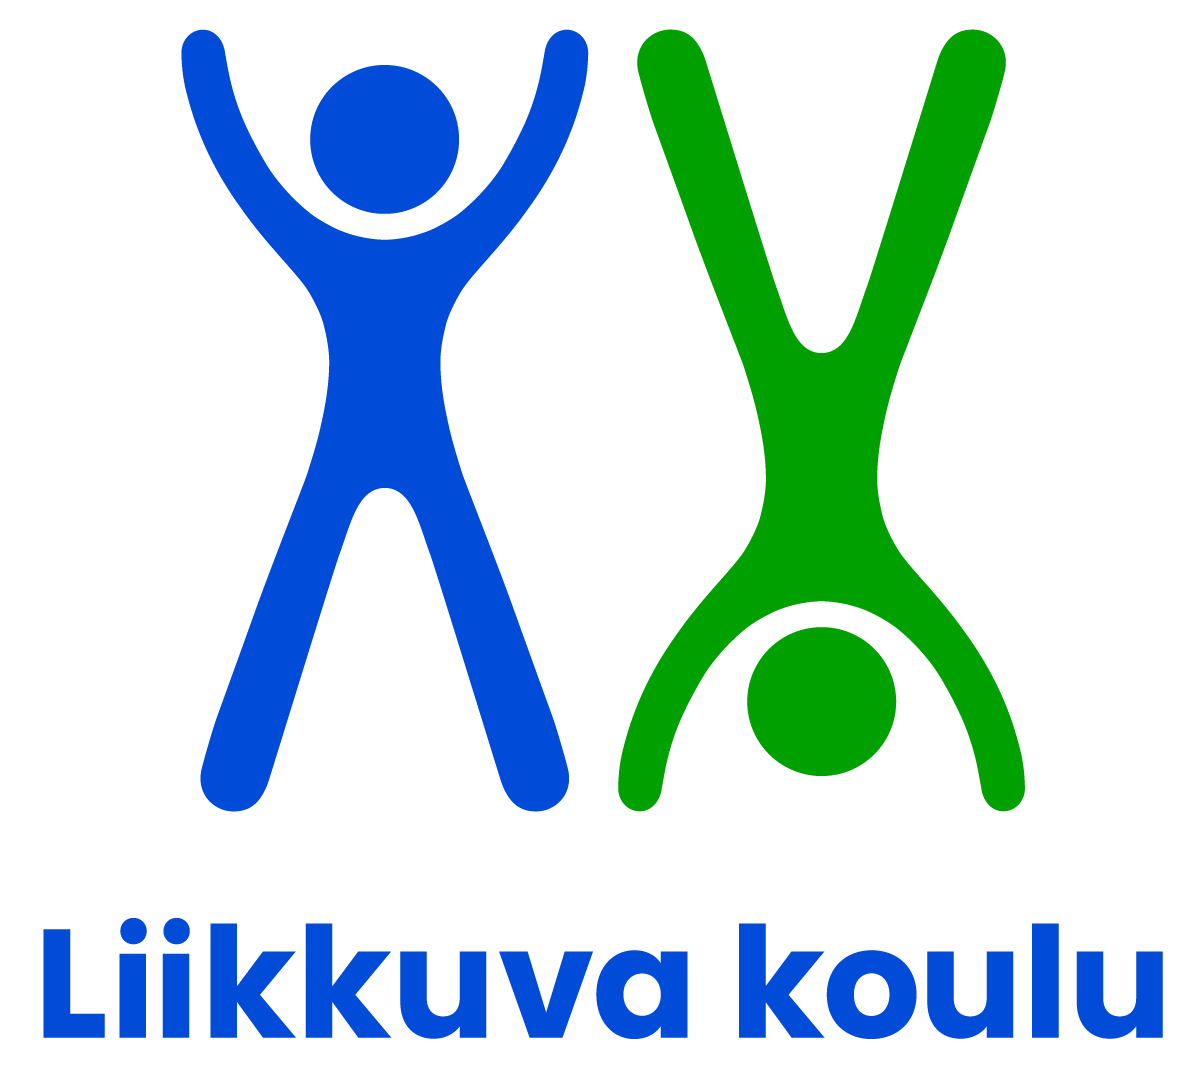 Liikkuva koulu -logo.